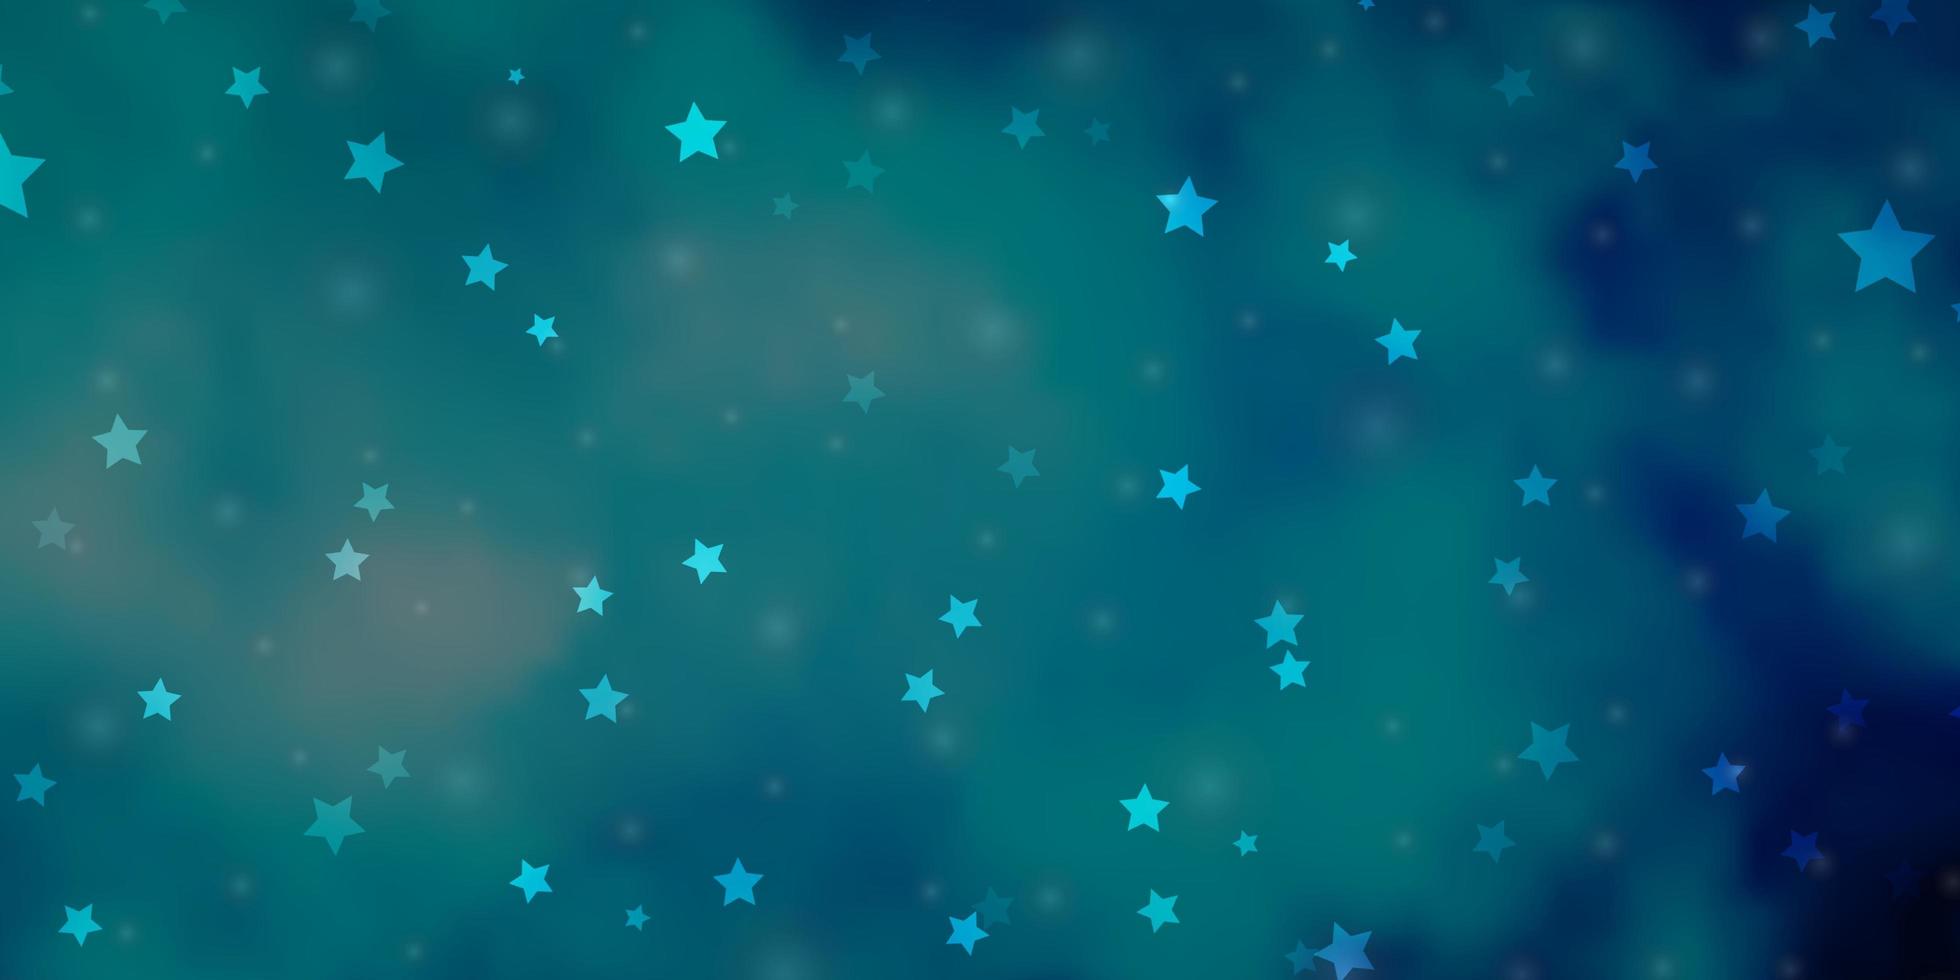 sfondo vettoriale azzurro con stelle colorate illustrazione colorata in stile astratto con motivo a stelle sfumate per libretti pubblicitari di capodanno